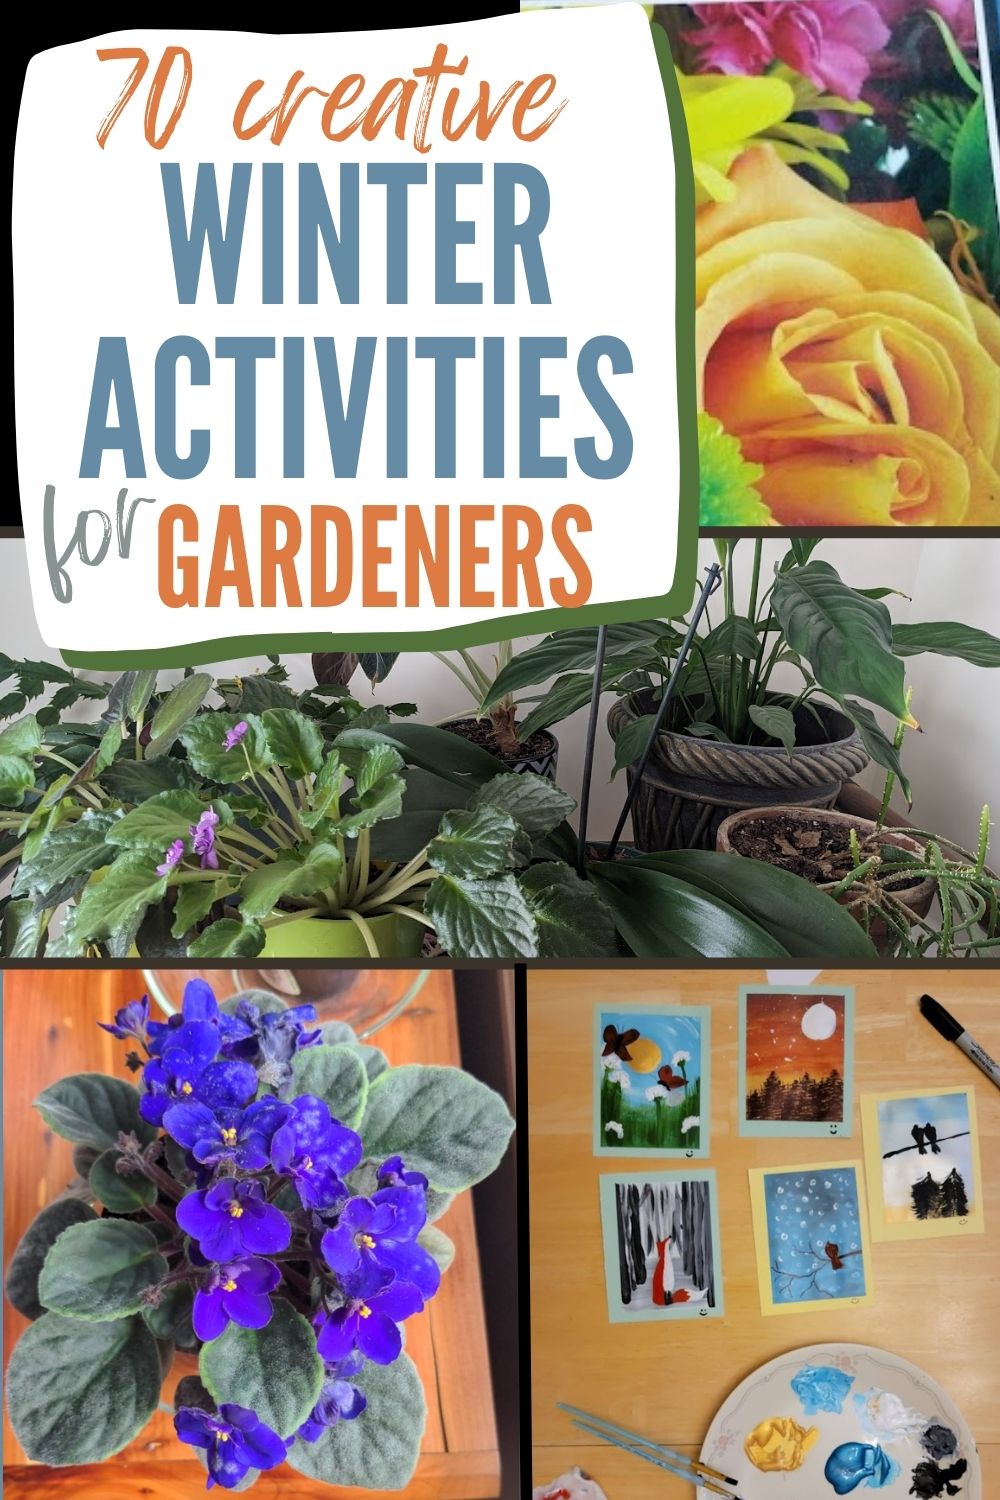 70 creative winter activities for gardeners.